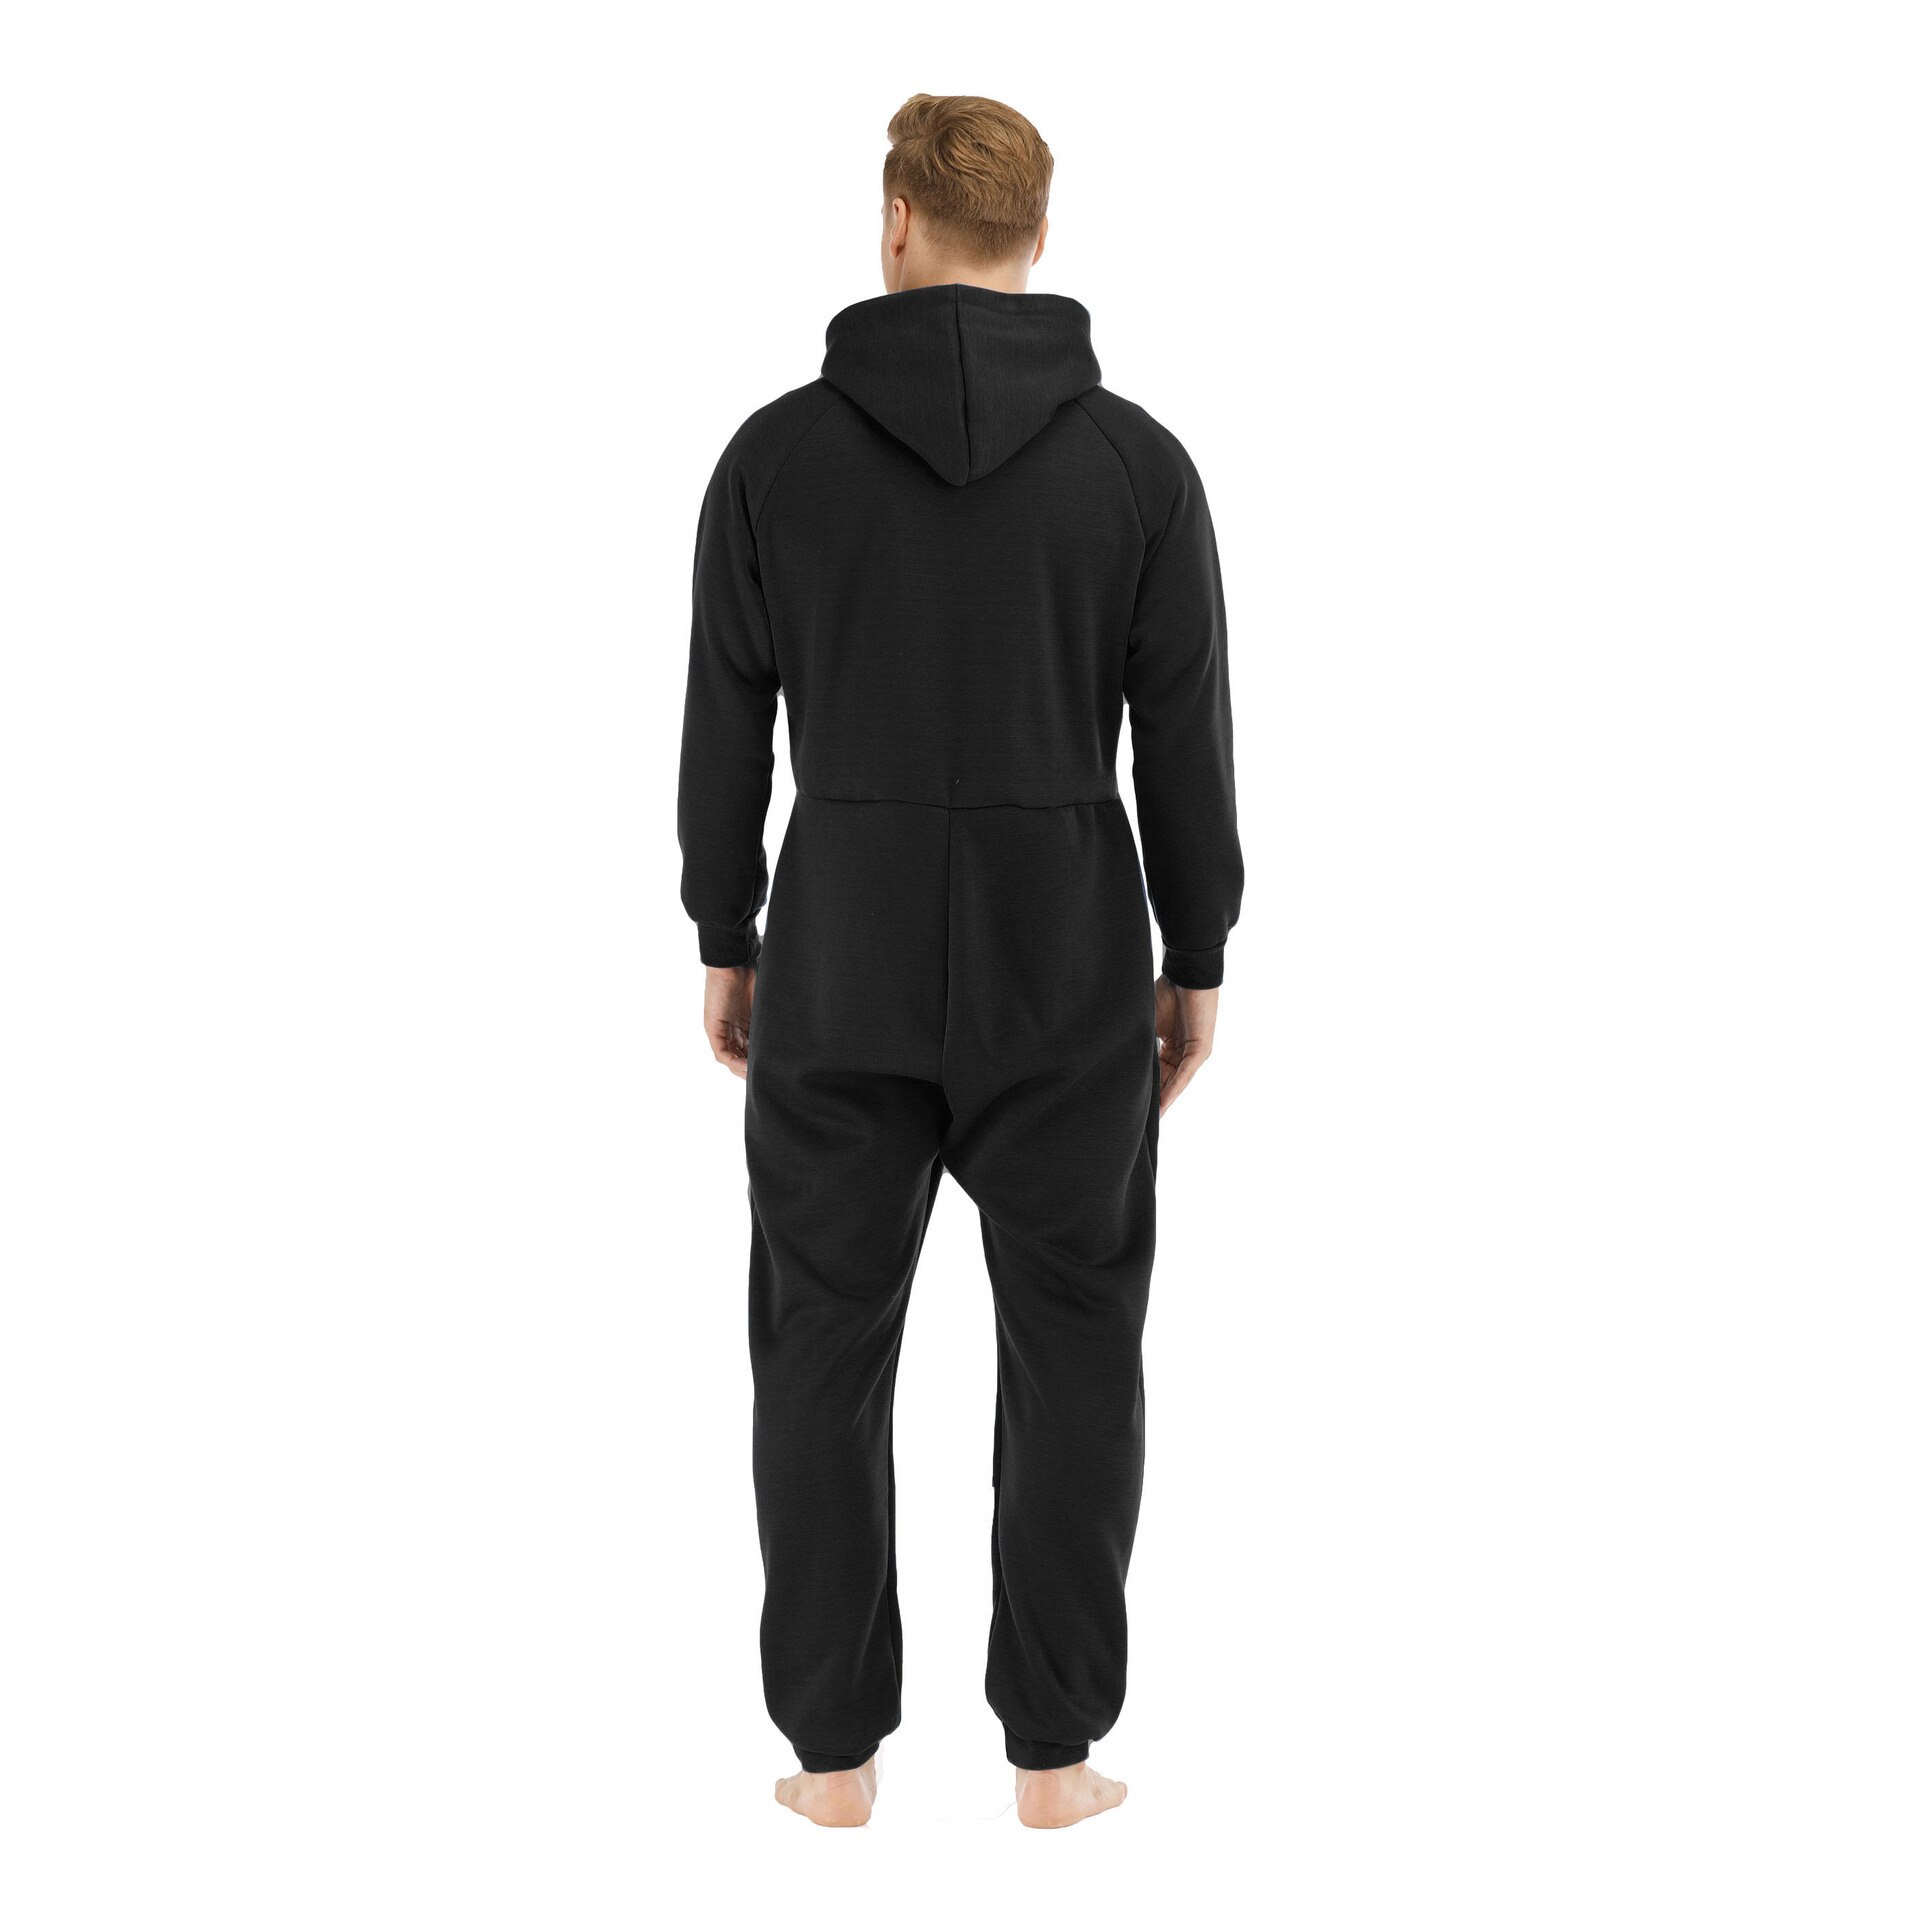 Jumpsuit Men Pajamas Solid Onesie Adults Autumn Winter Splicing Casual Hoodie Zipper Sleepwear Hooded Suits